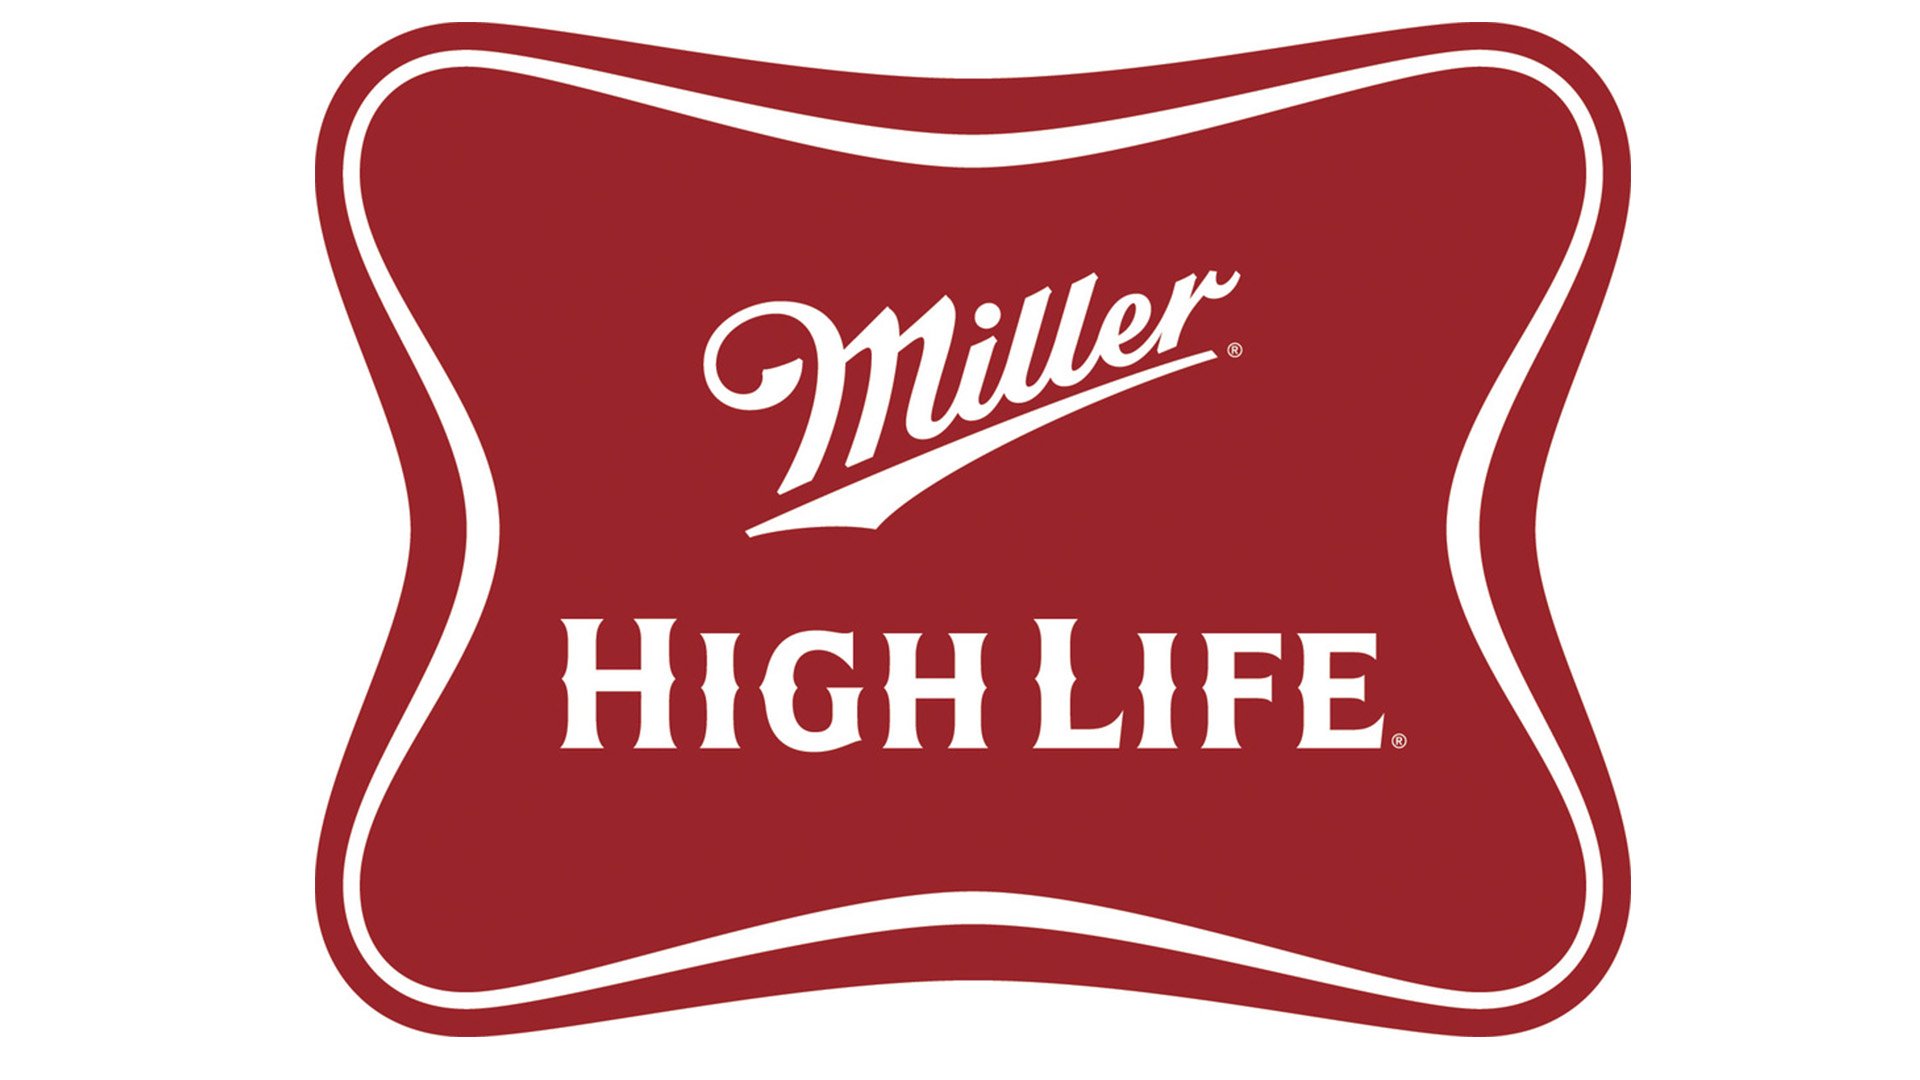 Hi is life. Miller High Life. High Life Beer. Миллер пиво логотип. Хай он лайф.